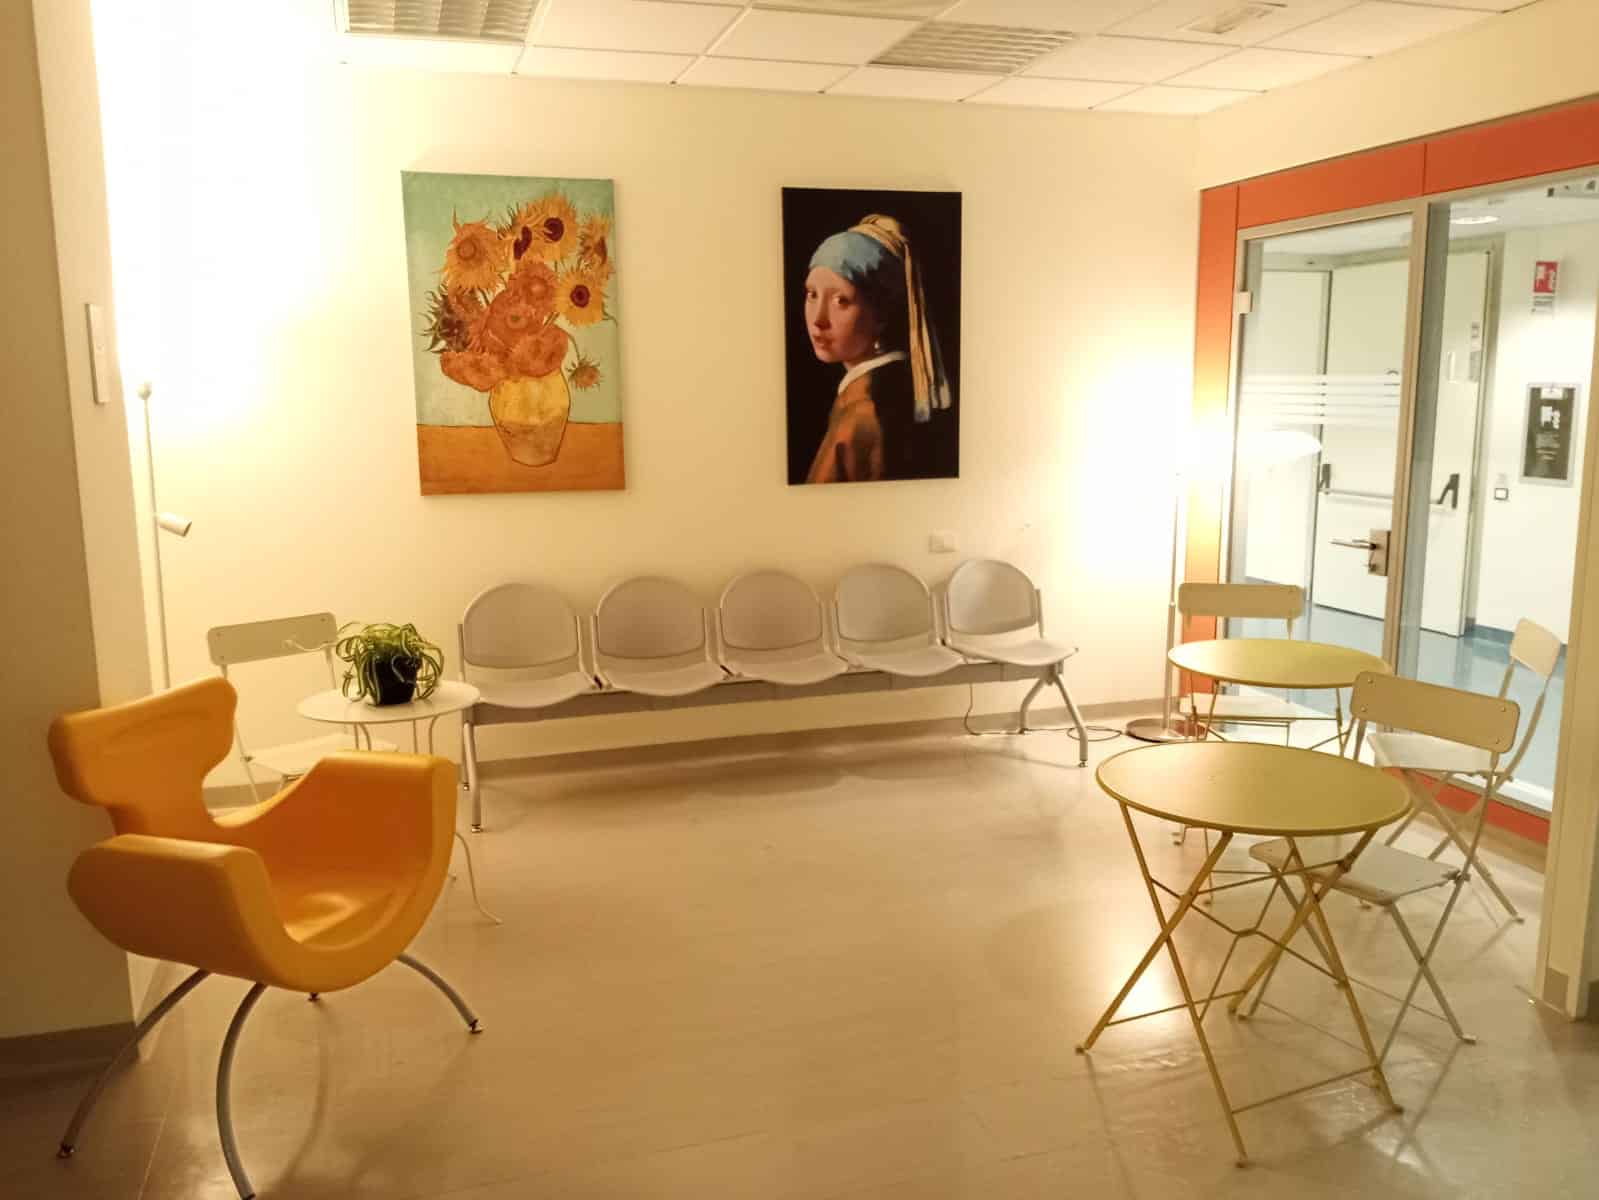 La sala relax Maria Dolci dell'ospedale di Massa